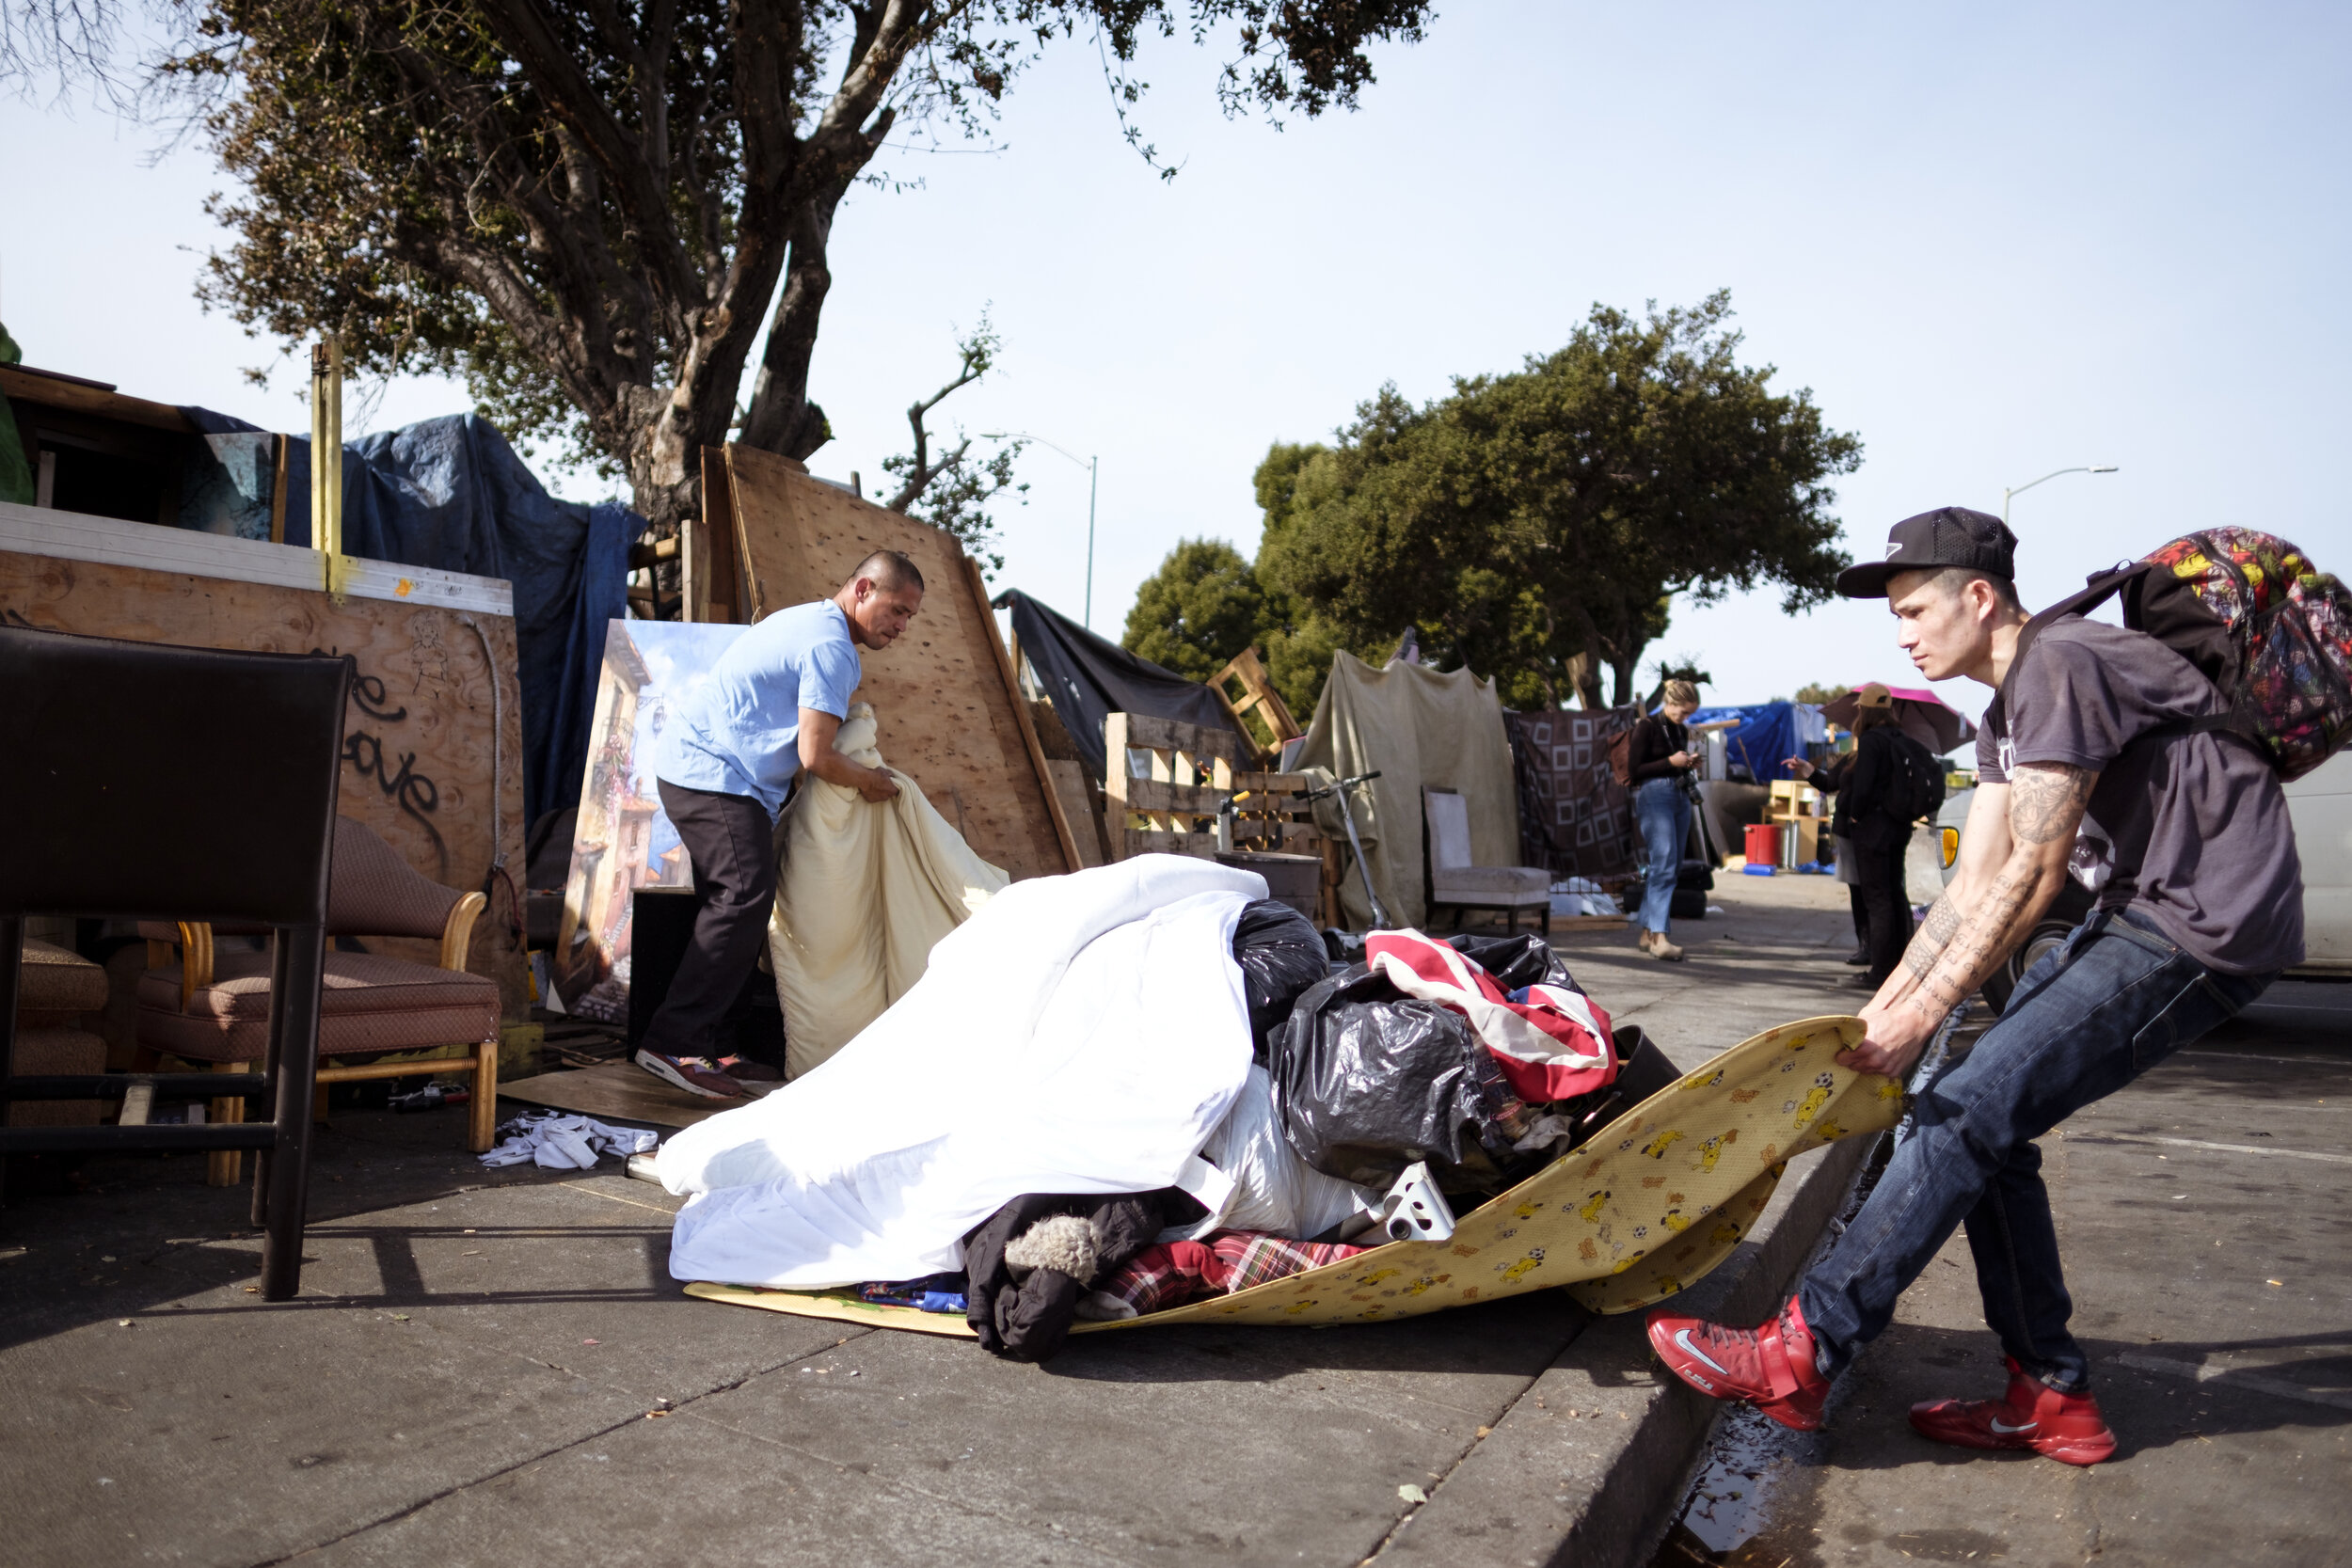 Stapp_Oakland_Homeless_Eviction_16.jpg